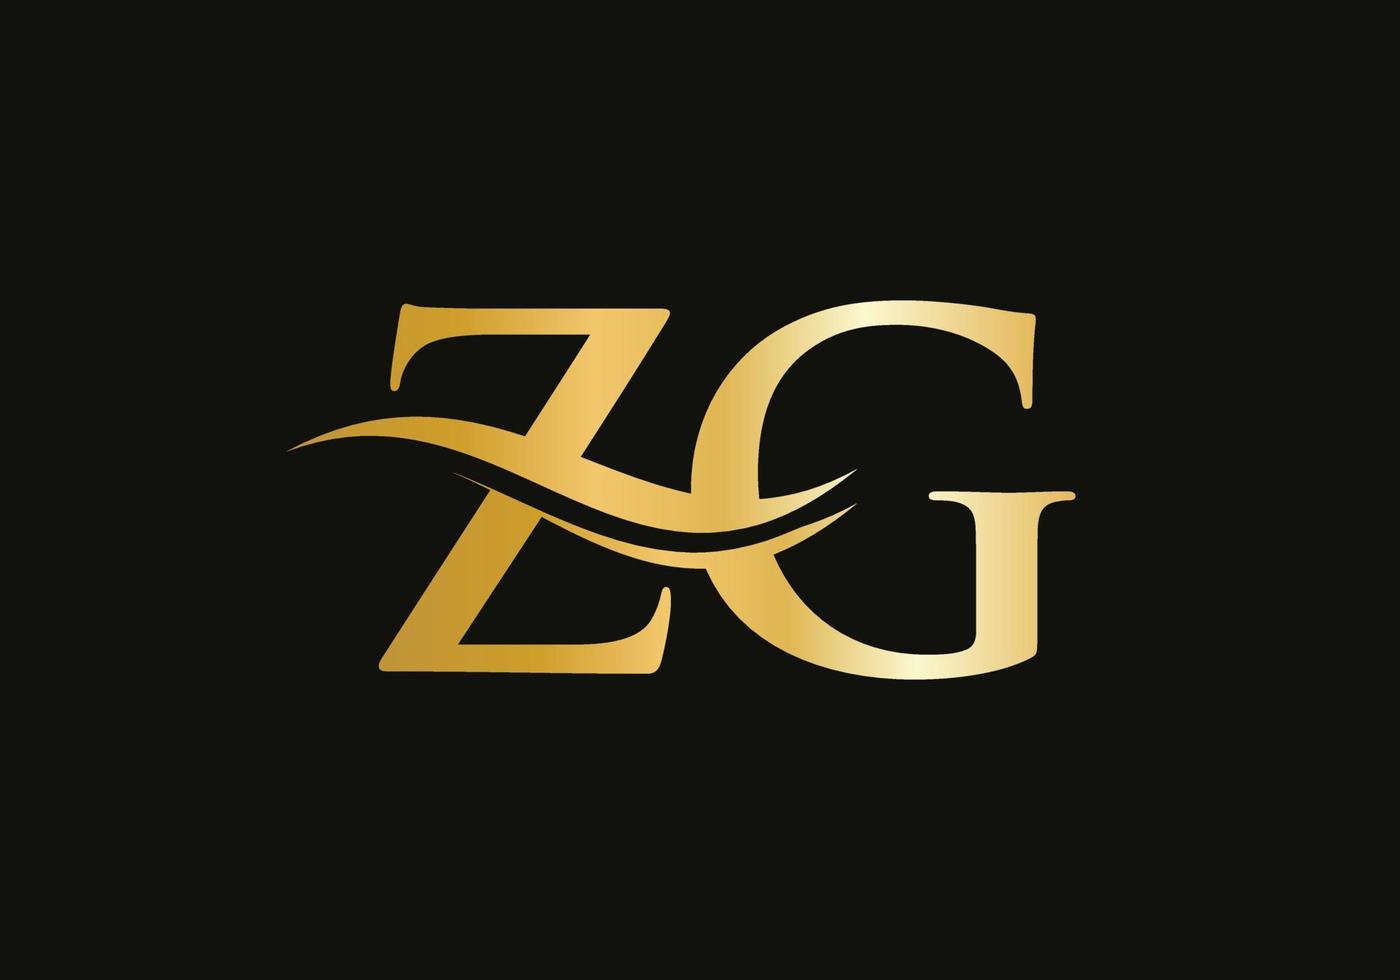 création initiale du logo de la lettre liée zg. vecteur de conception de logo lettre zg moderne avec tendance moderne